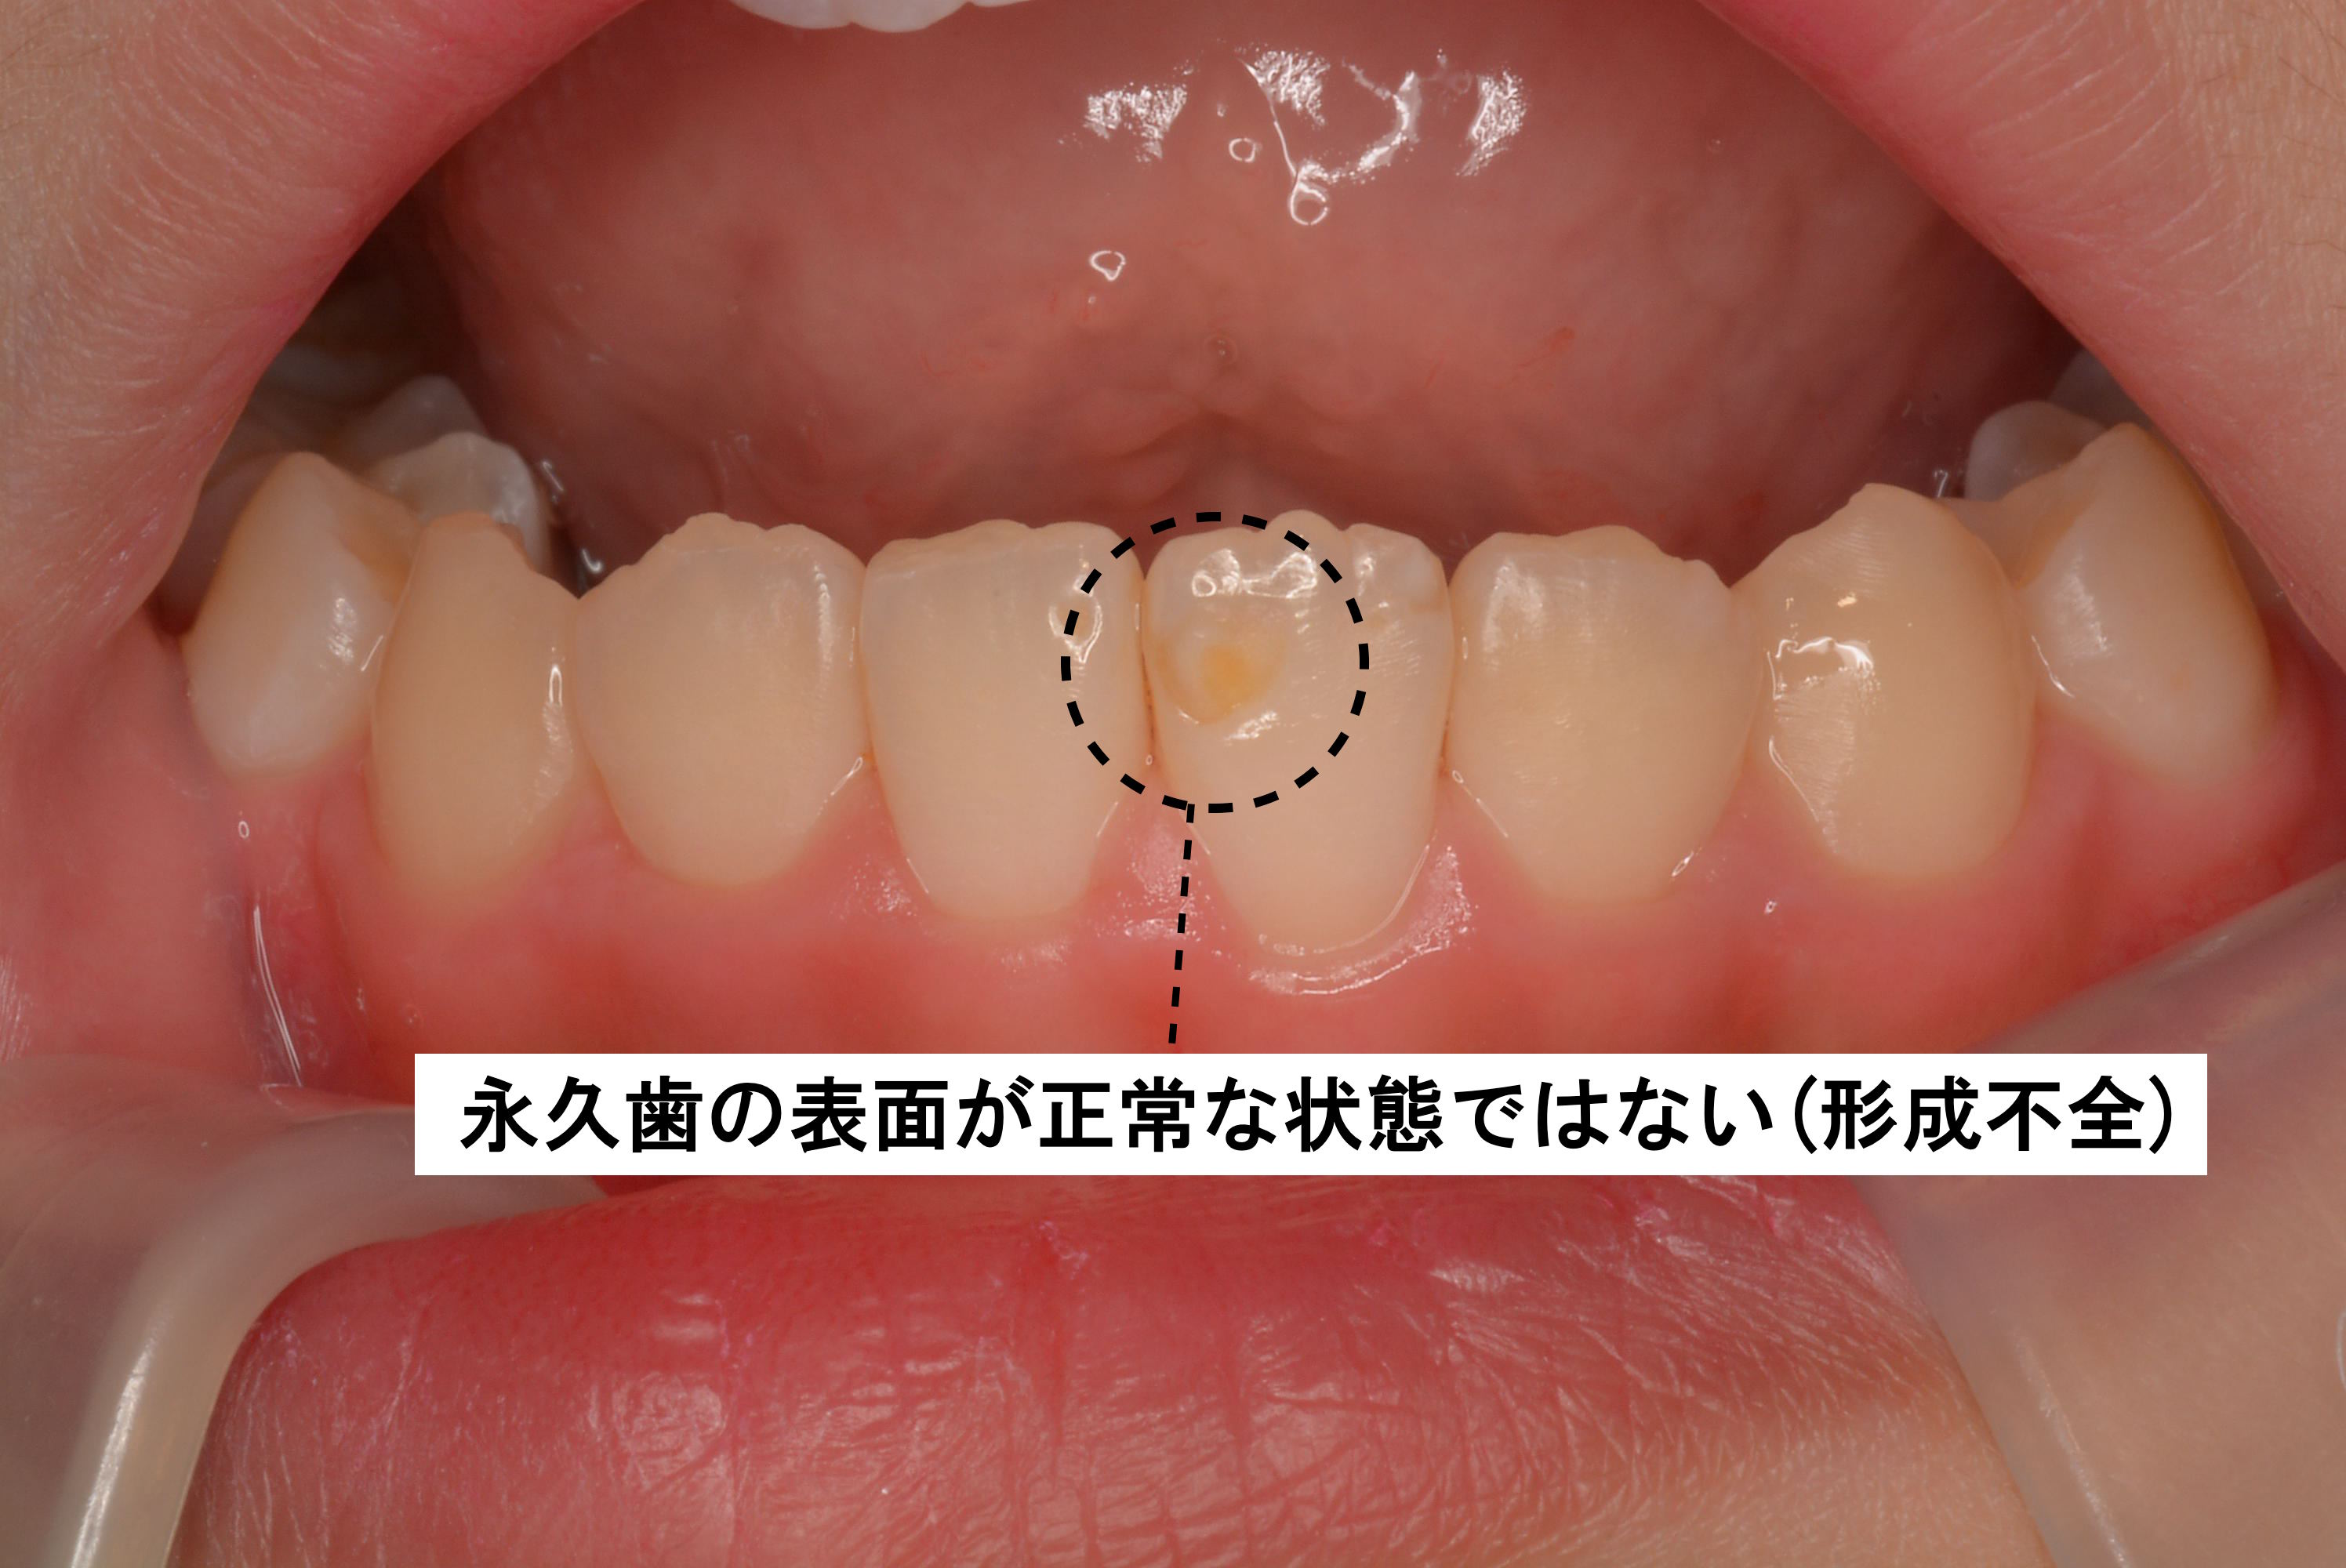 子供 乳歯 の虫歯は永久歯にも悪影響 原因と治療法まとめ Ken S Note